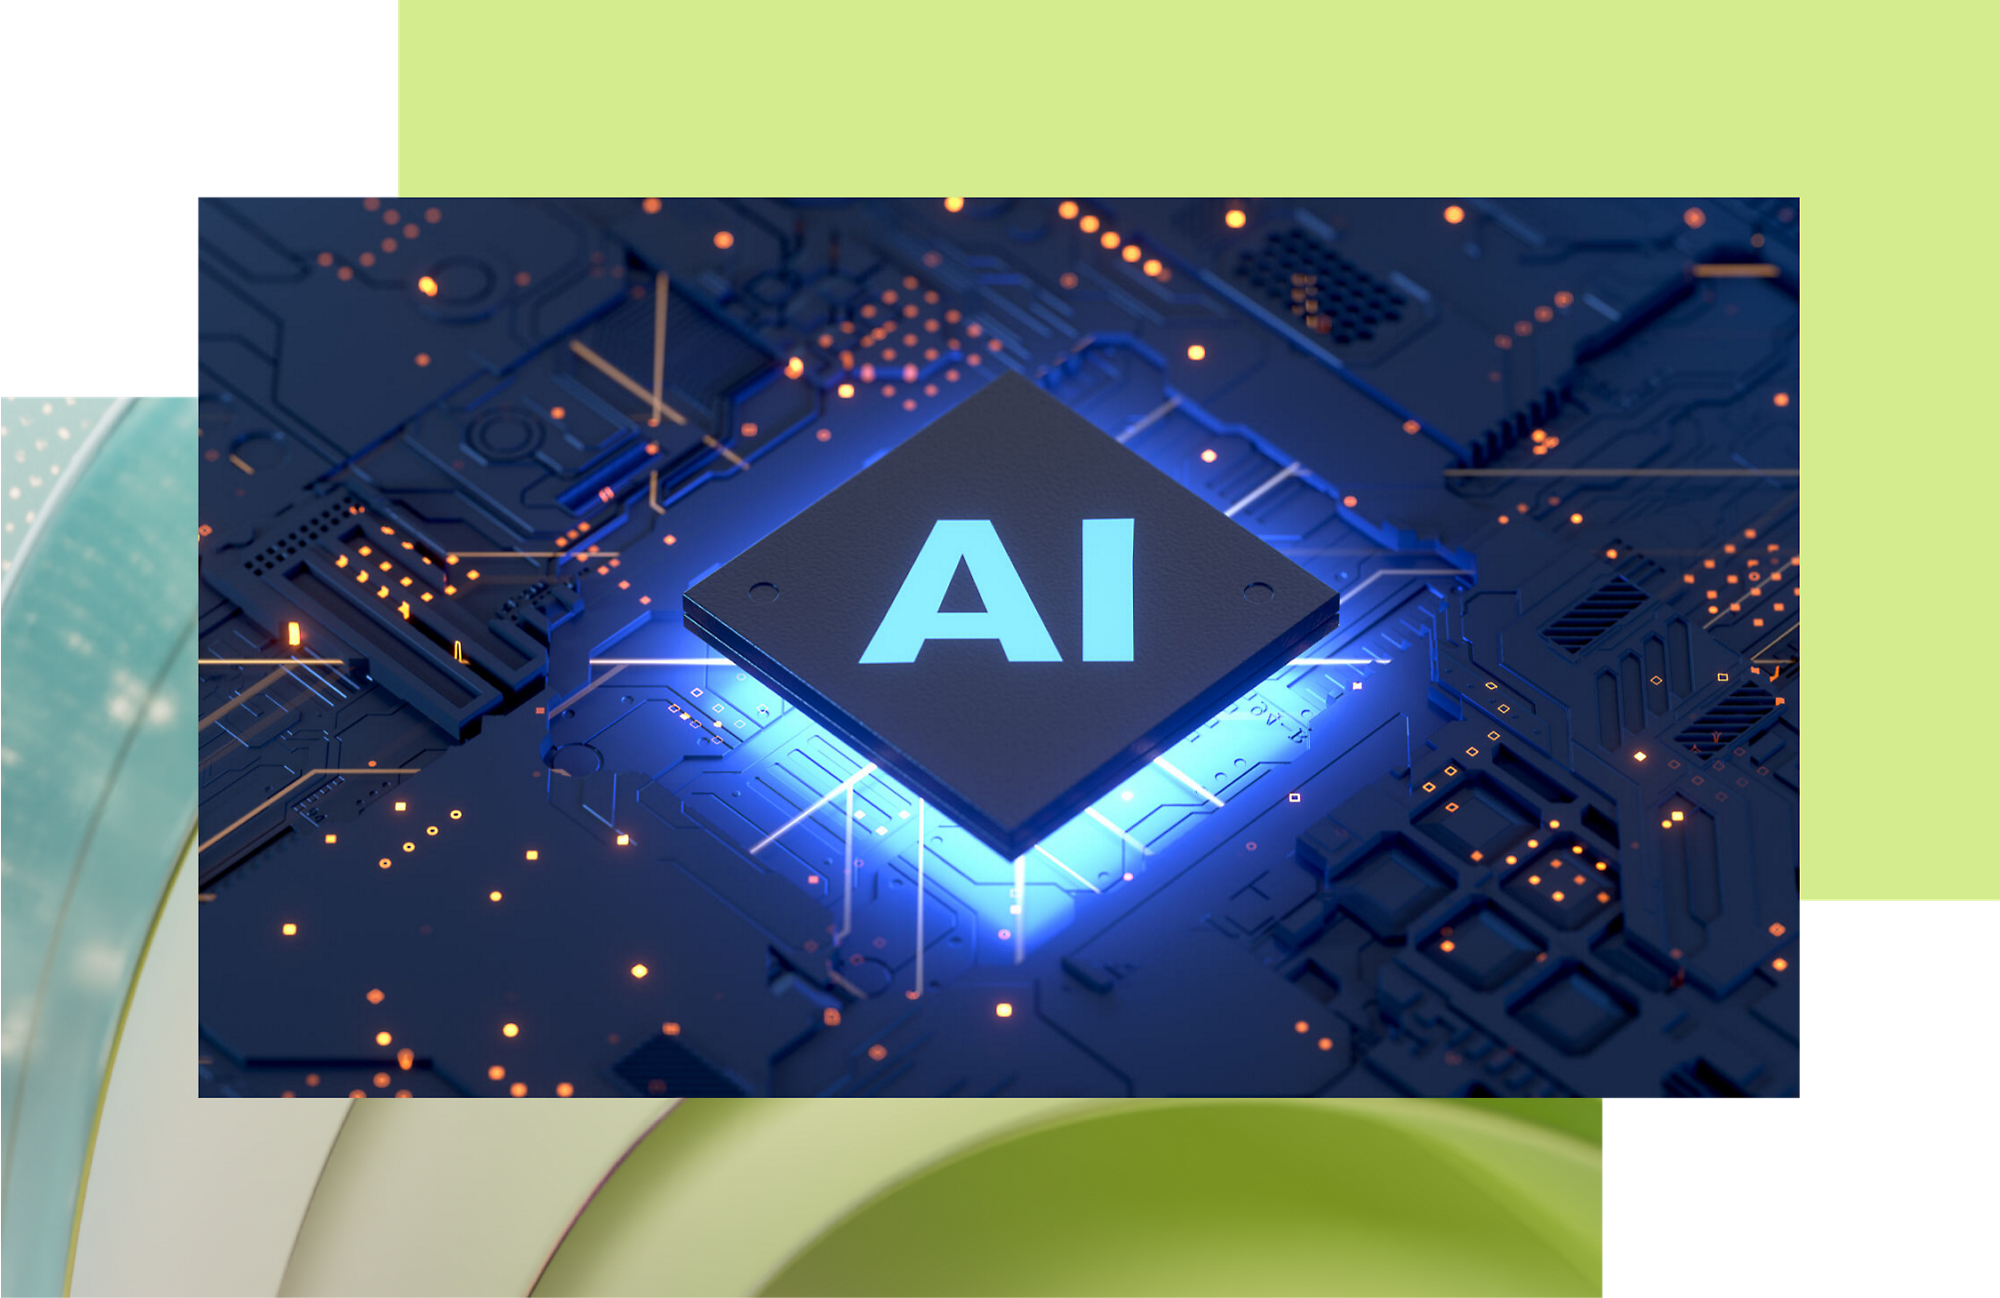 Un chip informático con la etiqueta "ai" iluminado con luces azules, rodeado de circuitos sobre un fondo oscuro.